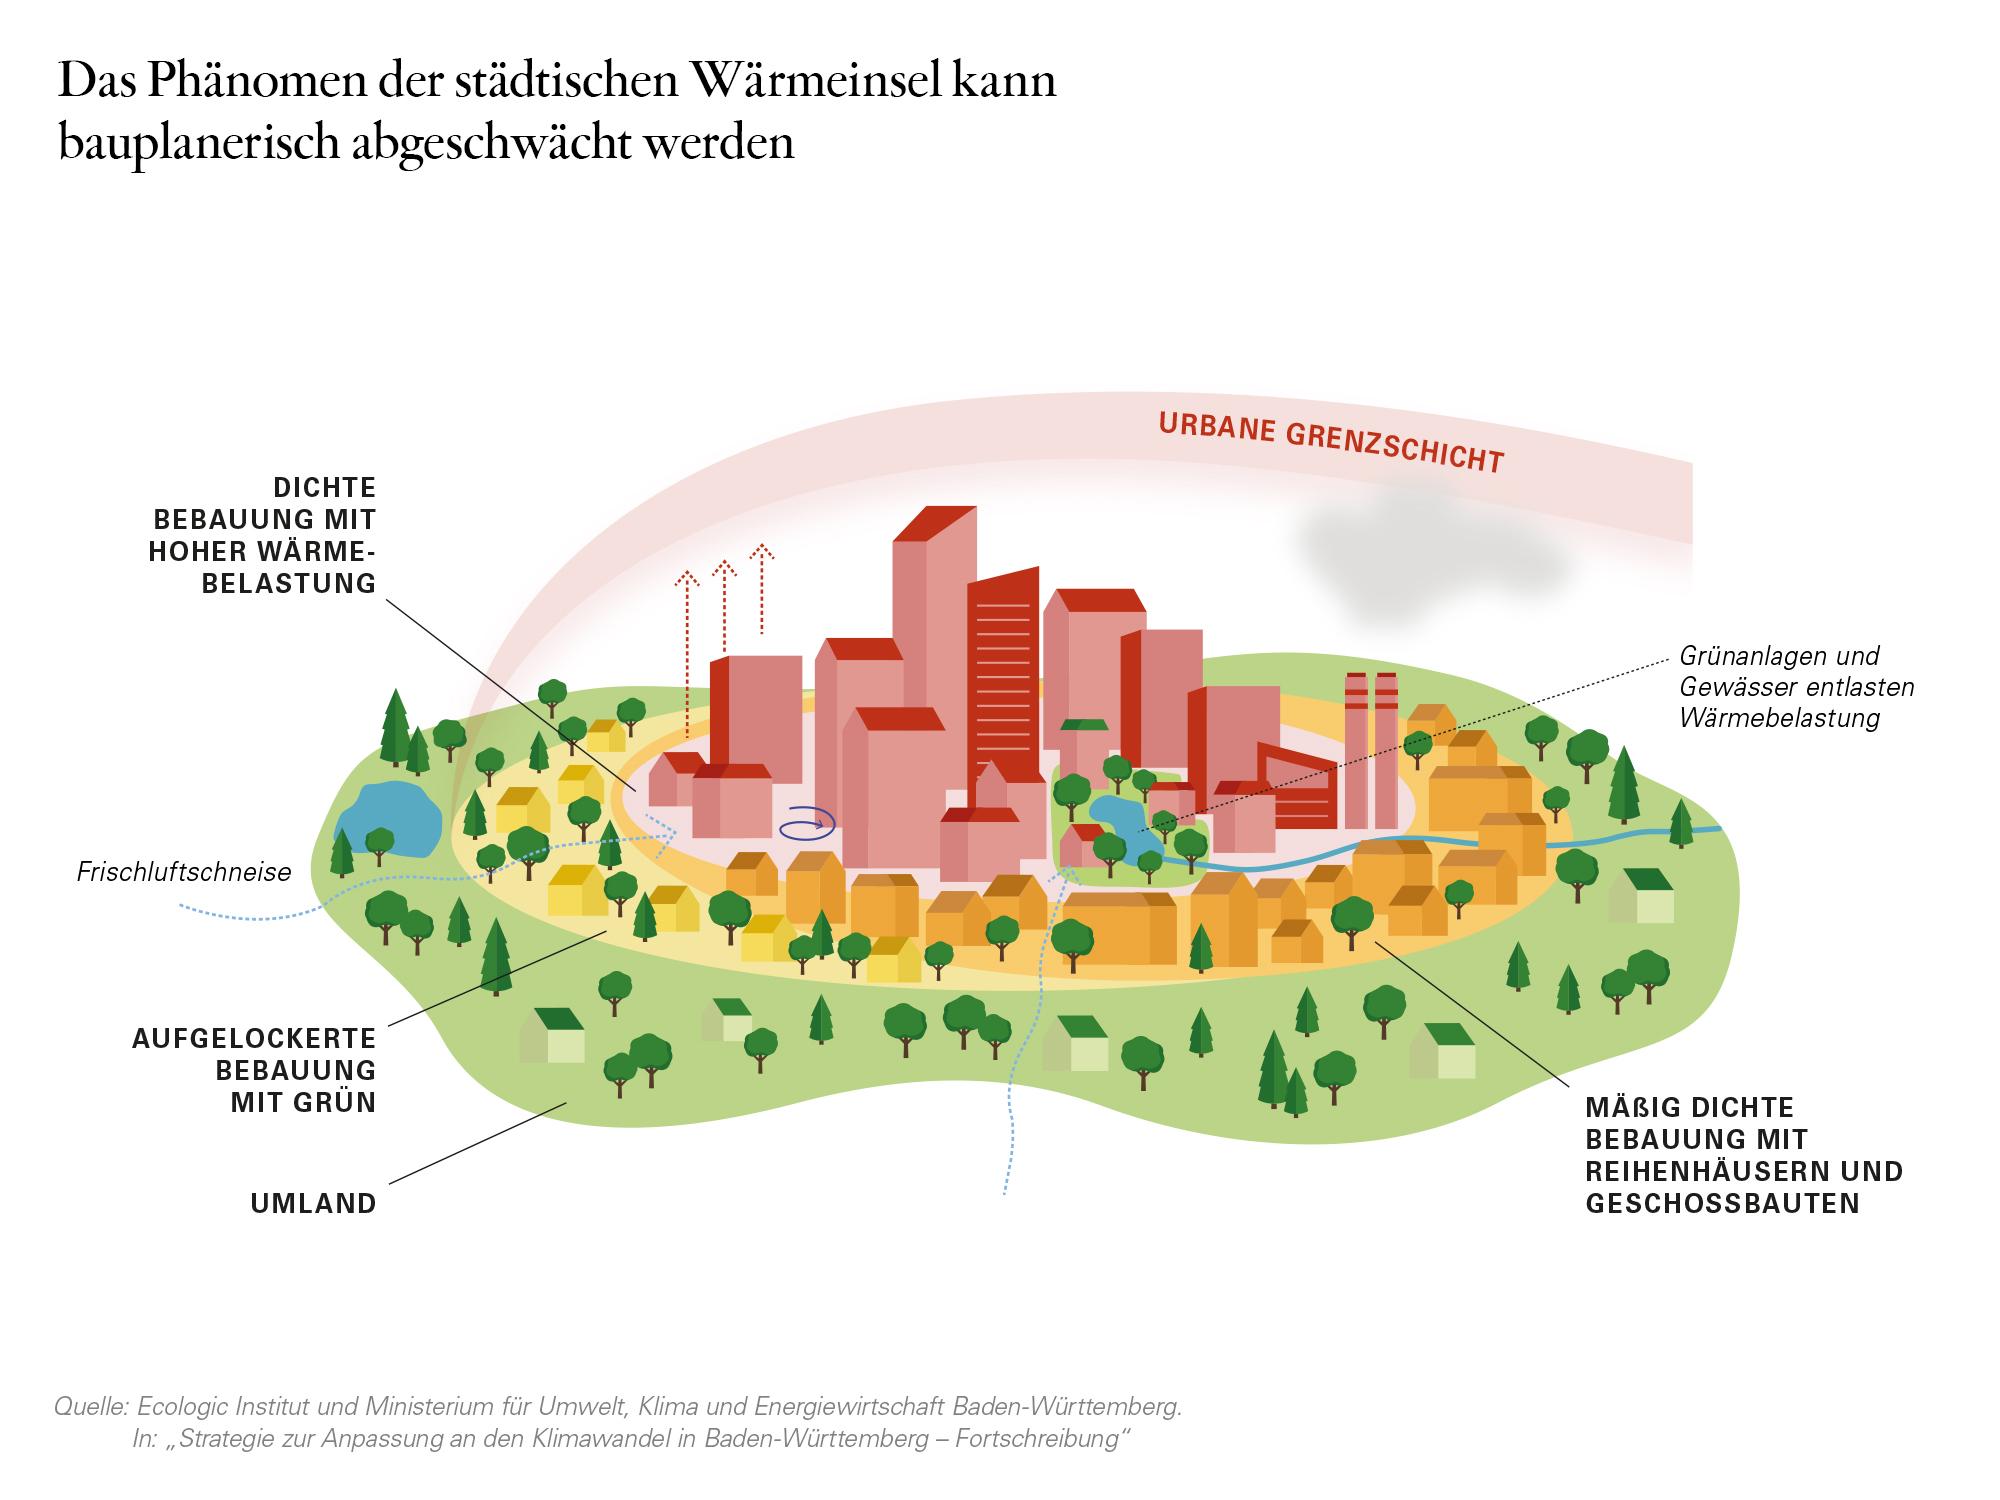 Ecologic Institut und Ministerium für Umwelt, Klima und Energiewirtschaft Baden-Württemberg. In: „Strategie zur Anpassung an den Klimawandel in Baden-Württemberg – Fortschreibung“